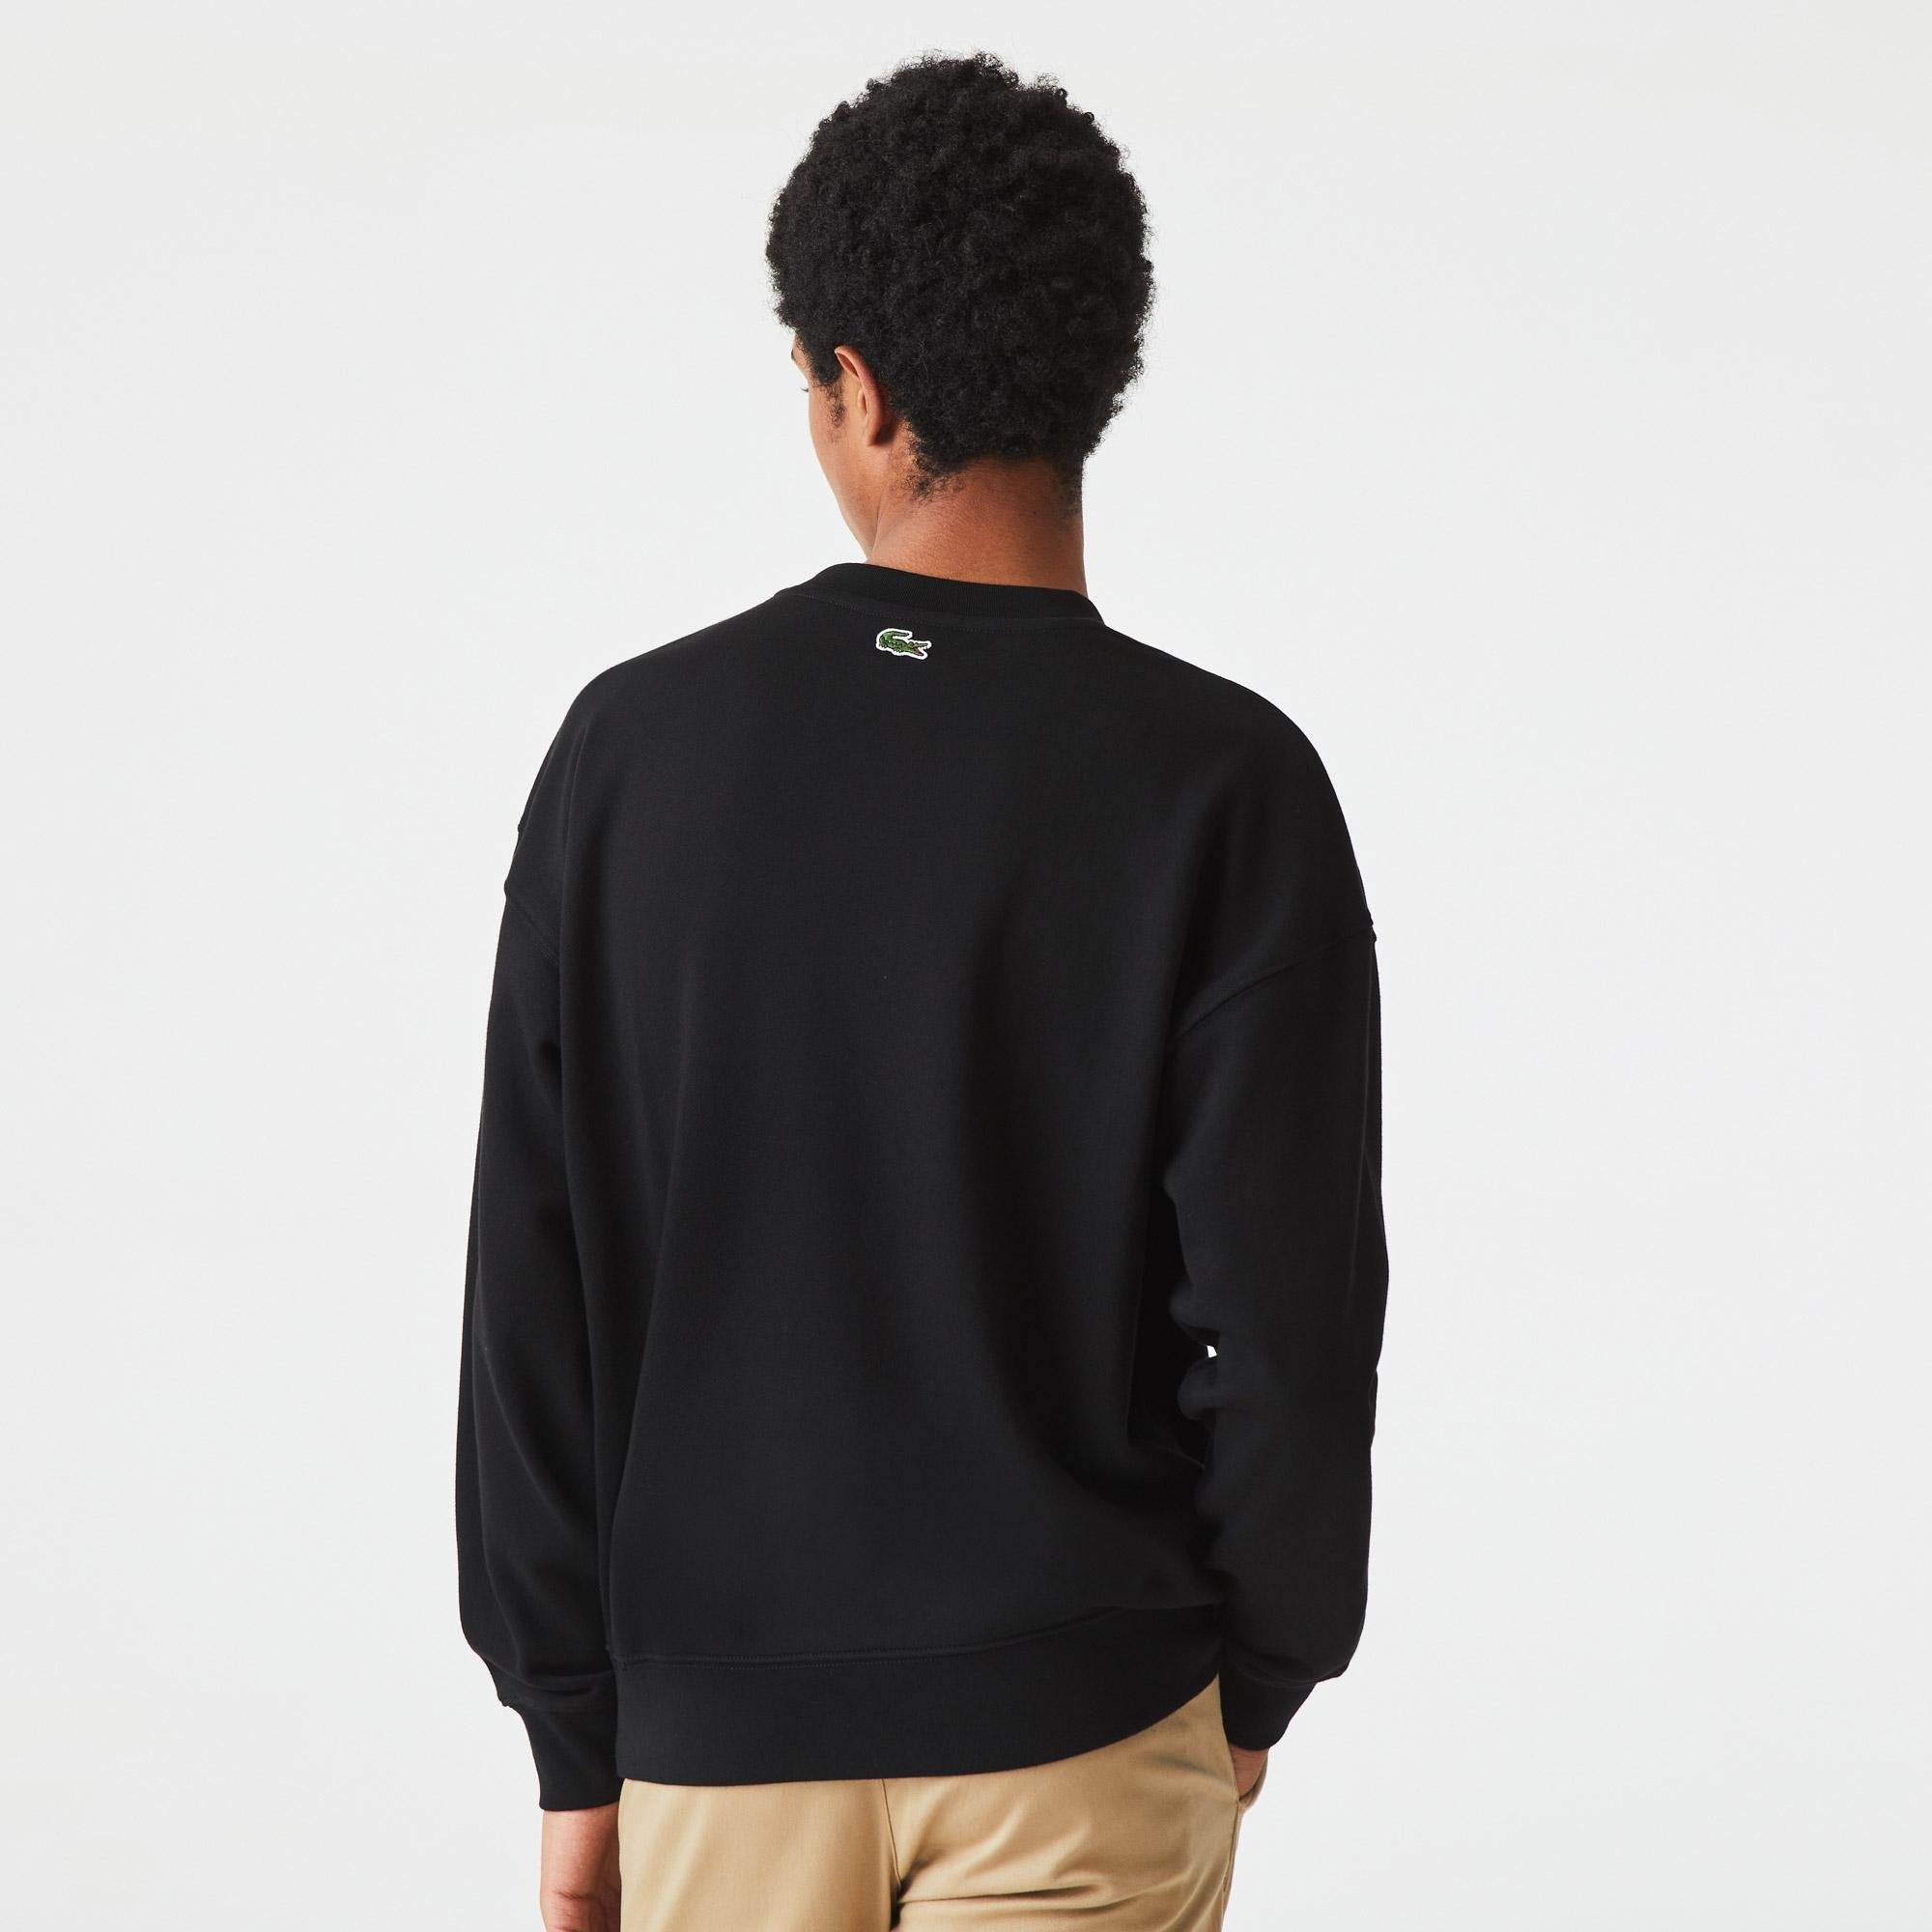 Lacoste - Loose Fit Monogram Print Sweatshirt - Black